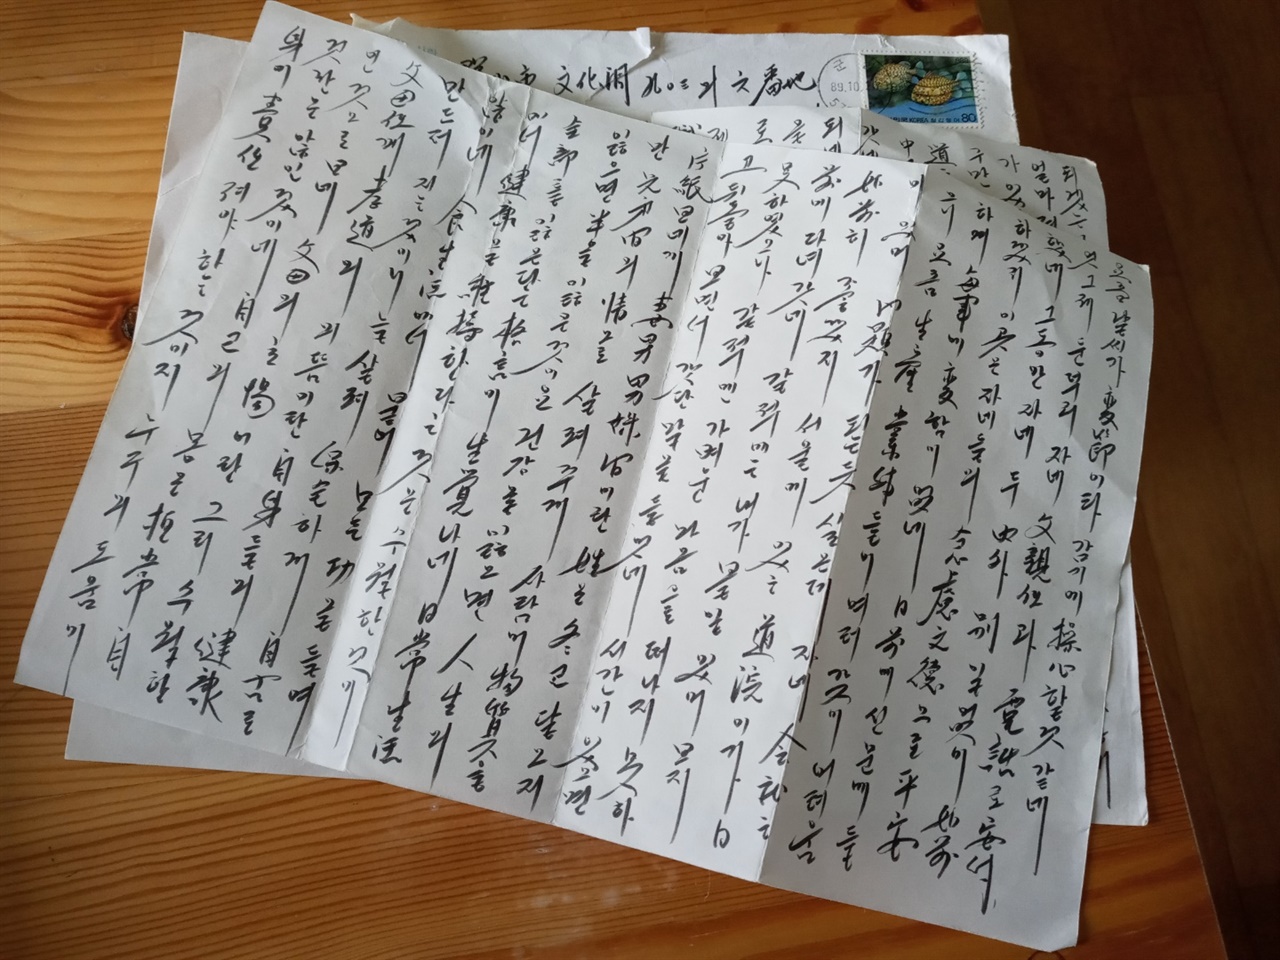 사위에게 보낸 아빠의 편지. 30년이 넘은 편지인데 글씨가 아빠의 성품같이 곧고 반듯하다.